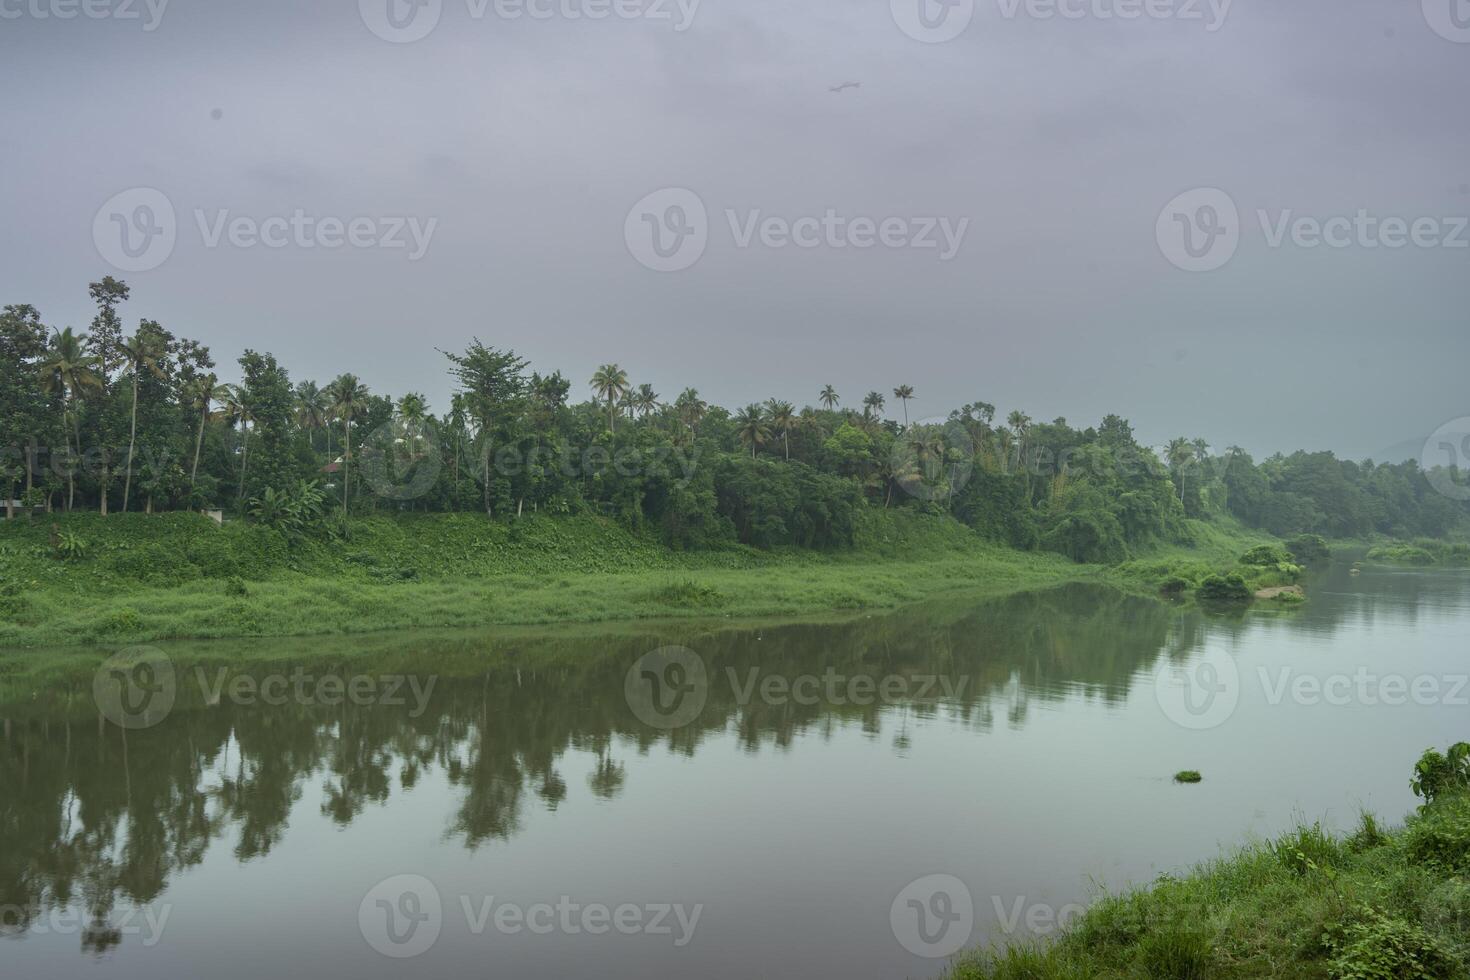 ein Landschaft Aussicht von ein Ruhe Fluss mit Grün Bäume und Berg im Indien foto